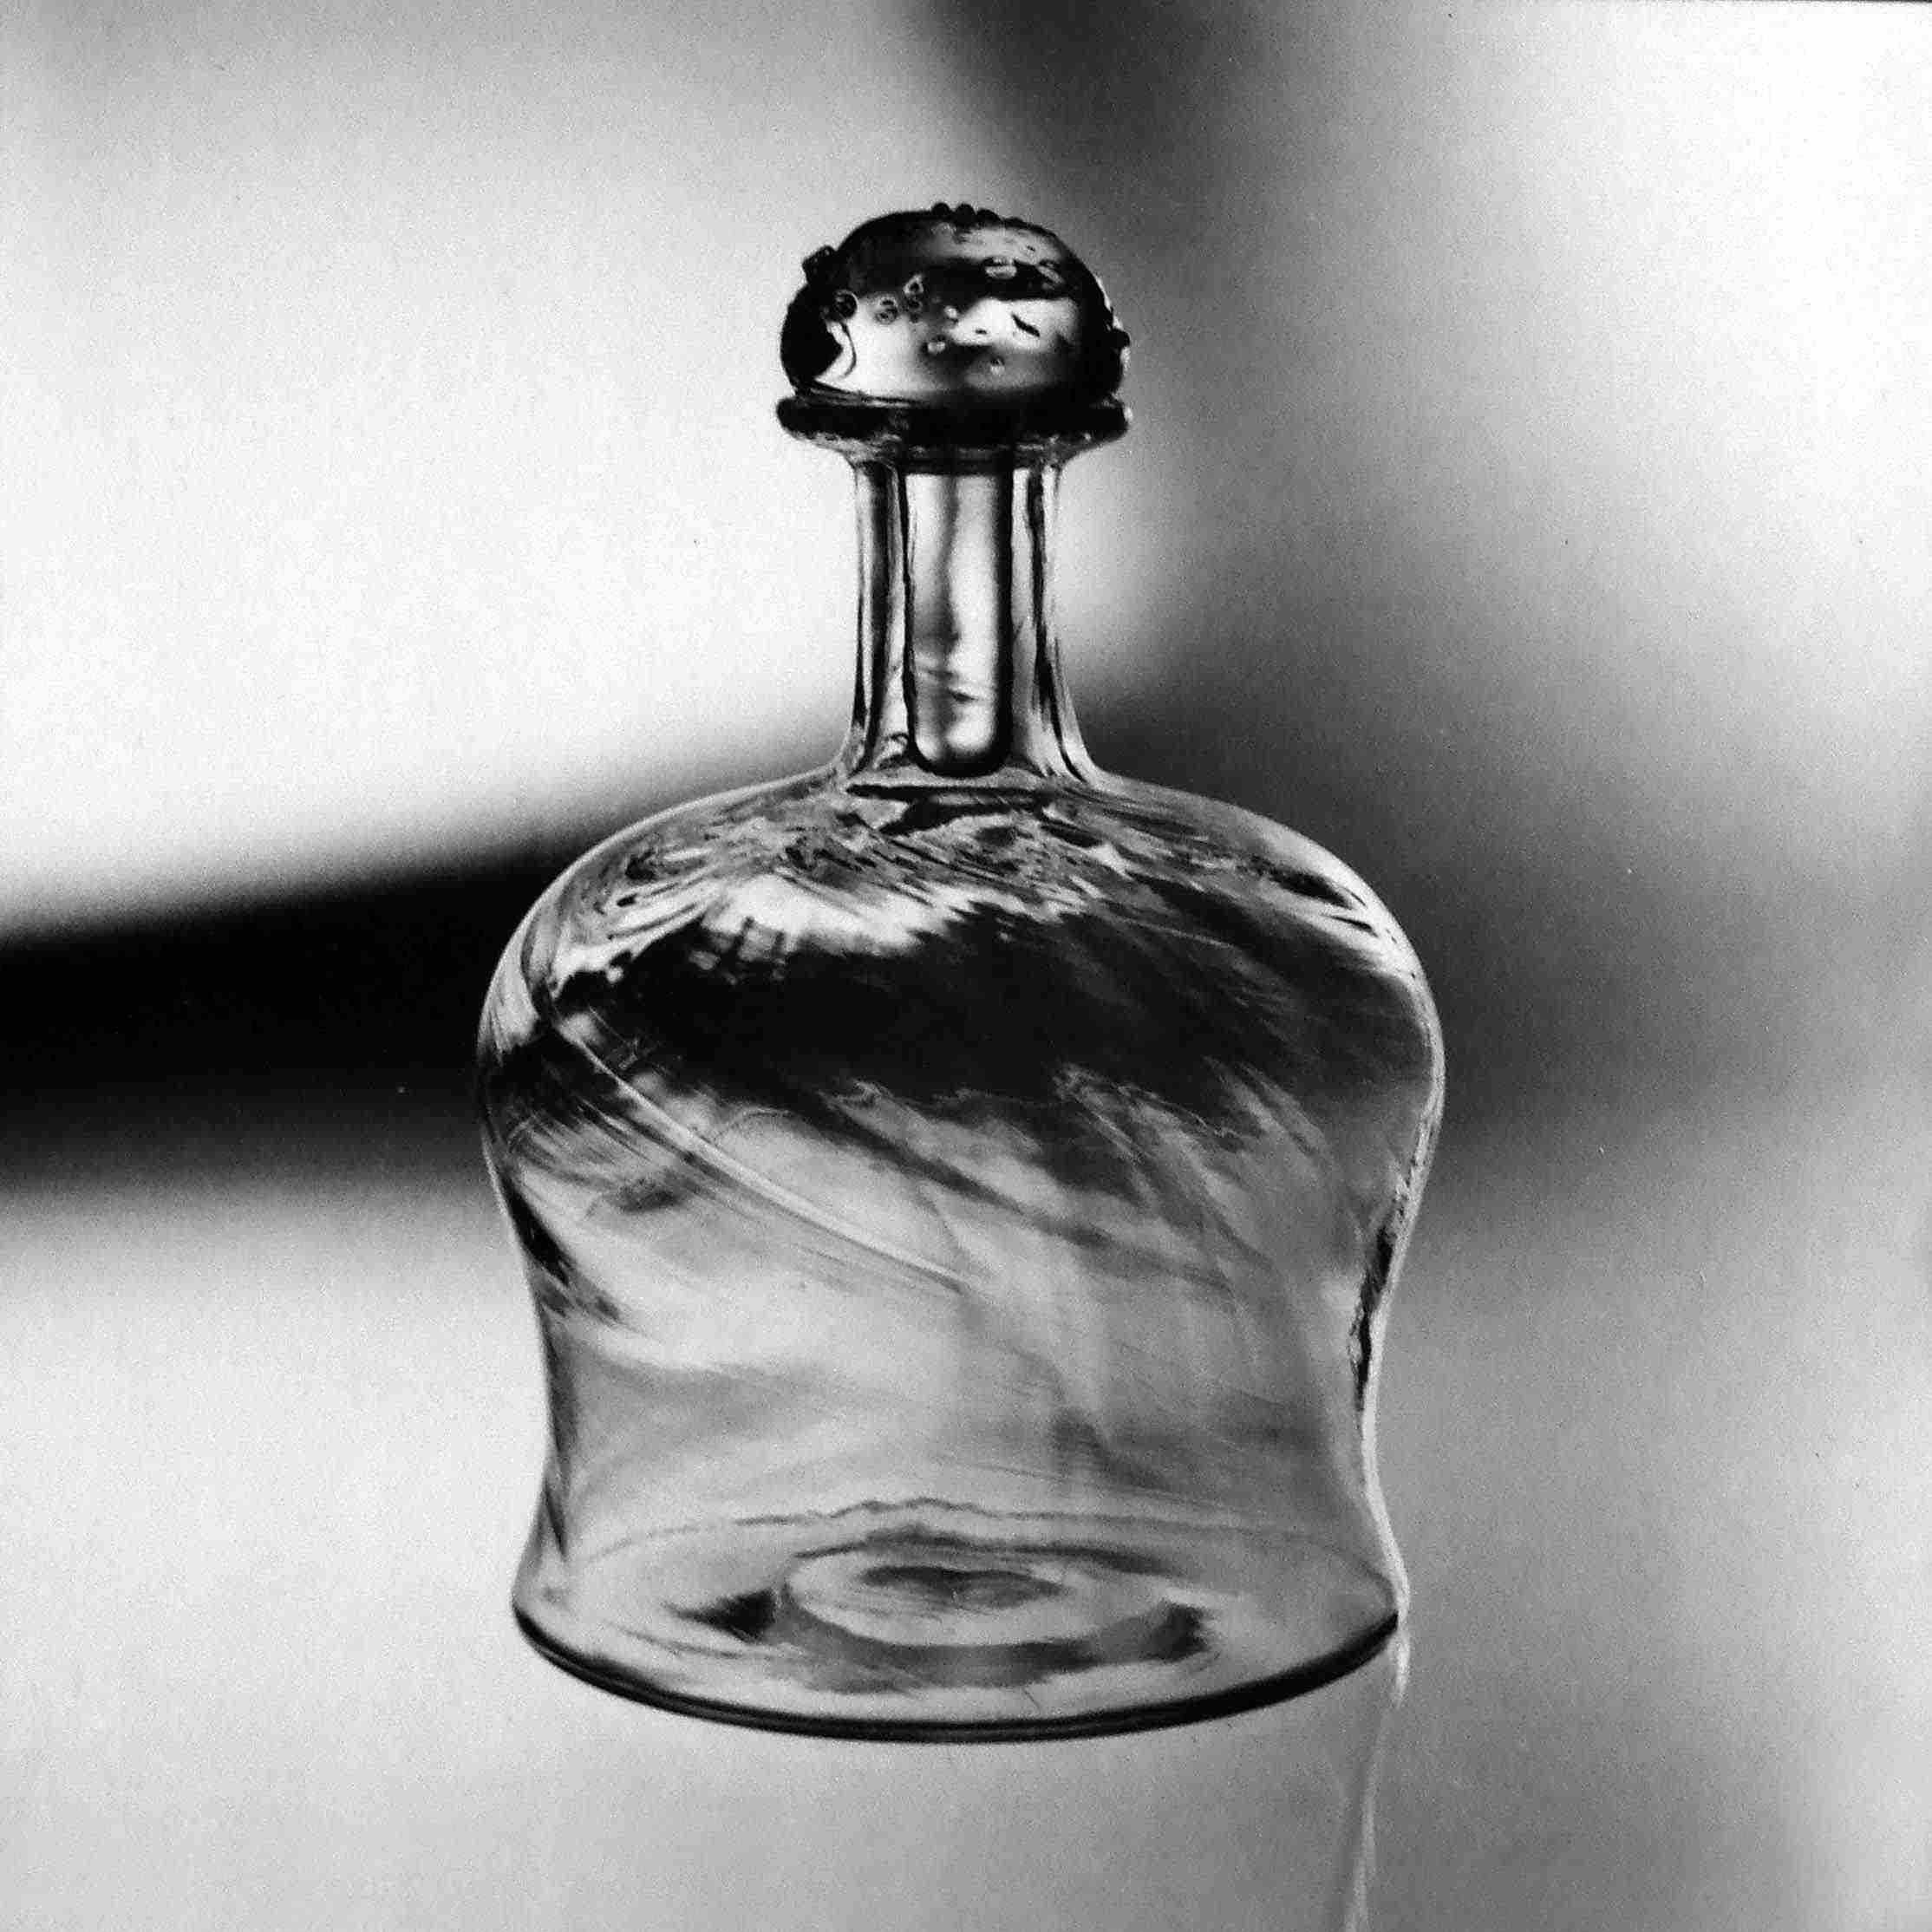 Expo Bu 387-66. Flaska i rampigt glas, Evald Kraft, bitr hyttmästare, foto: John Selbing